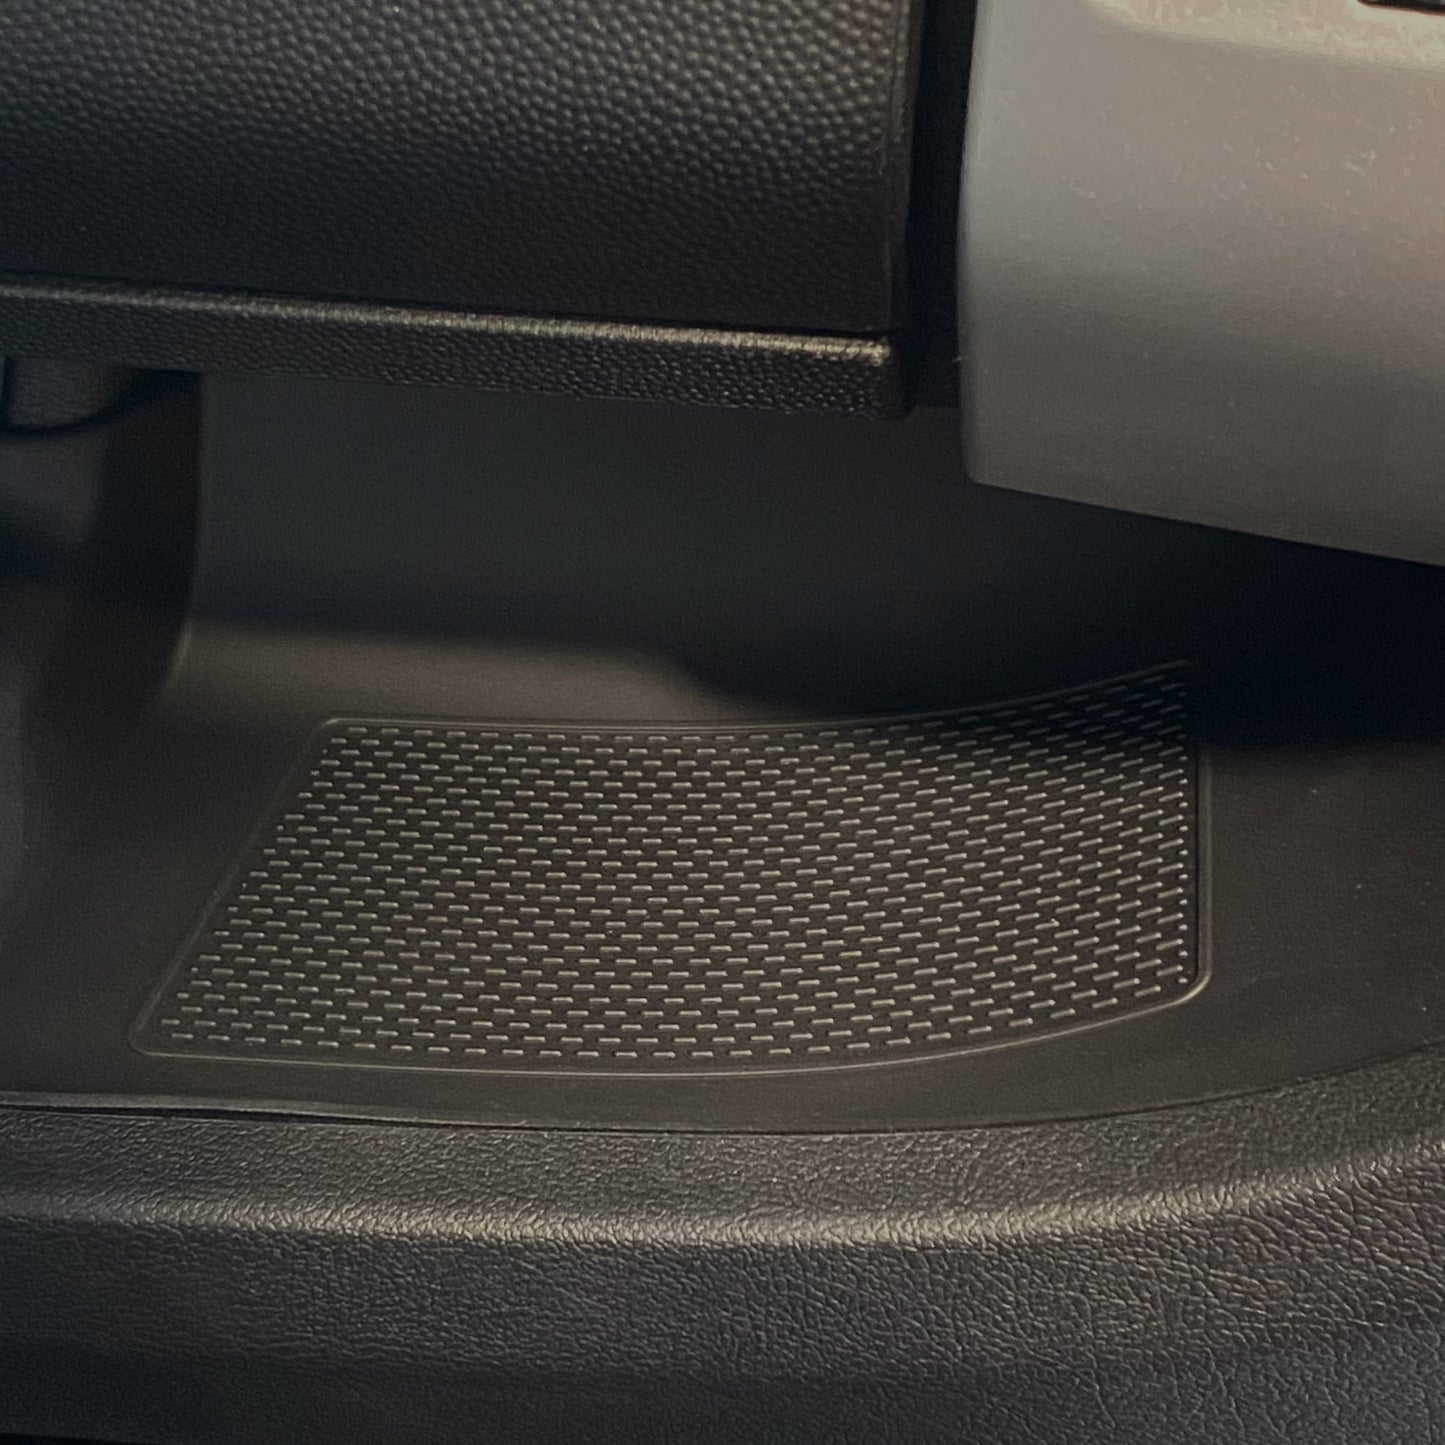 Insertos/Alfombrillas de Goma Negra para el Panel Inferior del Tablero de Peugeot Boxer LHD (Conducción a la Izquierda)